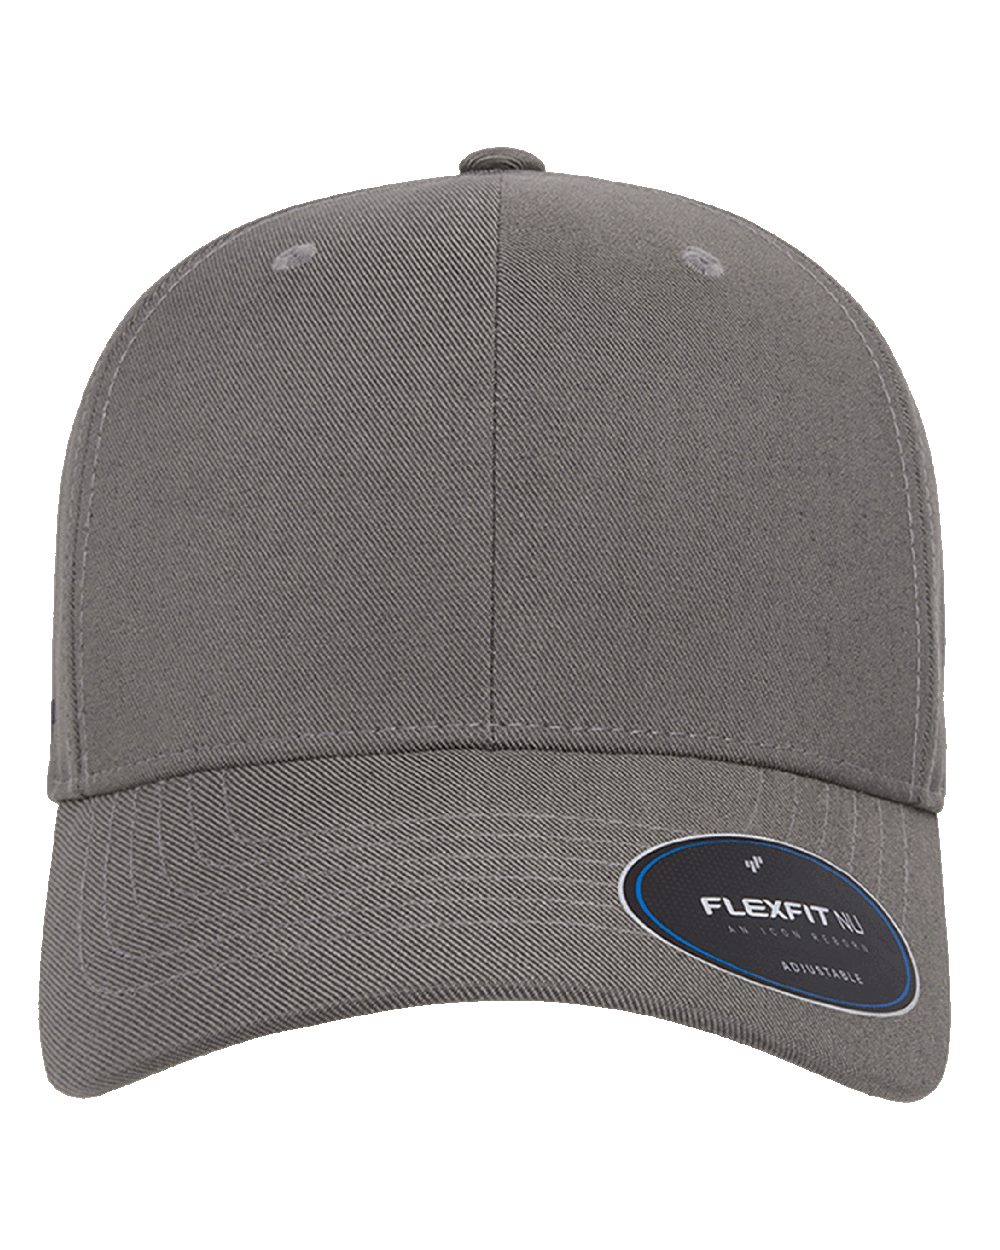 Flexfit 6110NU - NU® Adjustable Cap